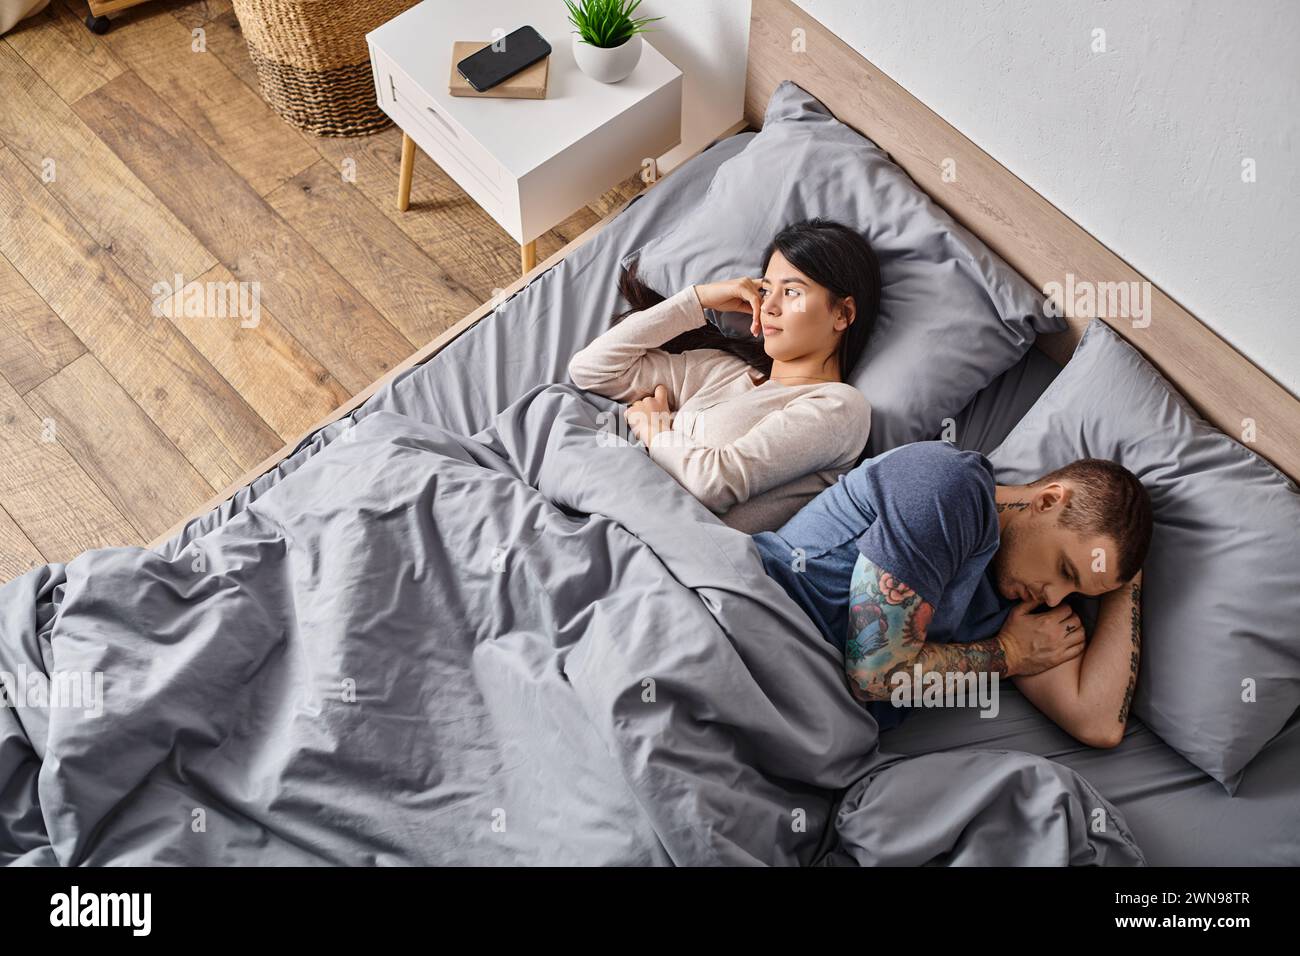 vue en angle élevé de la femme asiatique et de l'homme tatoué couché sur le lit, concept de difficultés relationnelles Banque D'Images